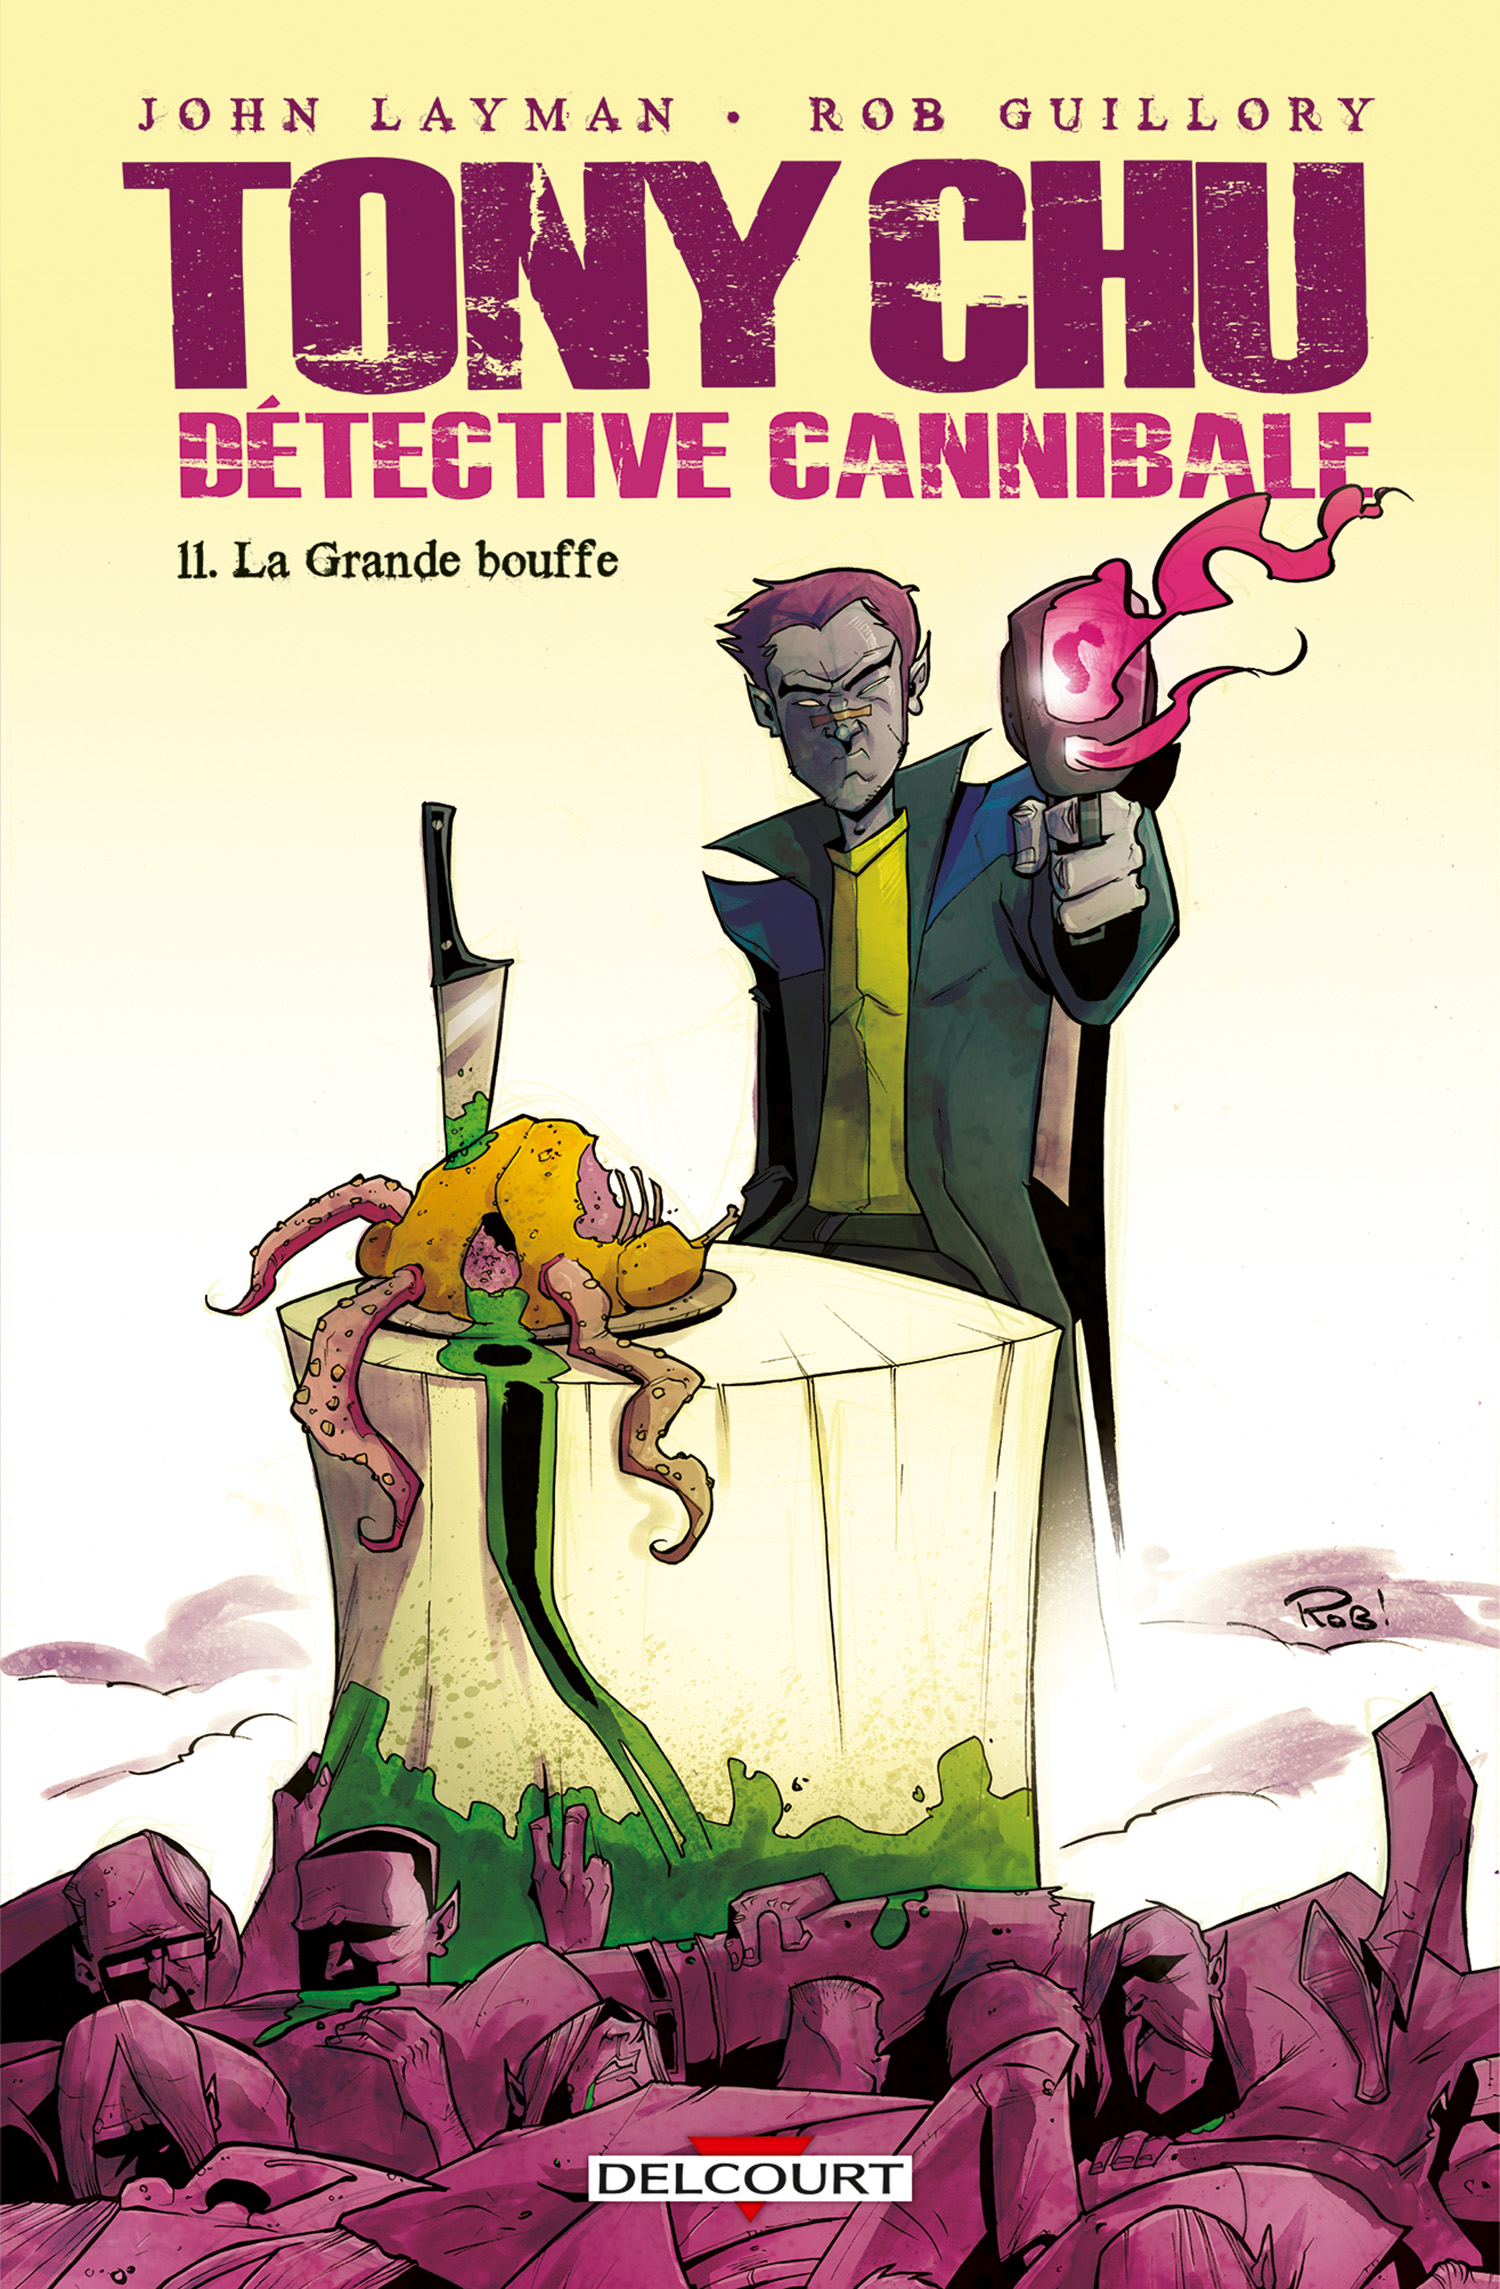  Tony Chu, détective cannibale T11 : La grande bouffe (0), comics chez Delcourt de Layman, Guillory